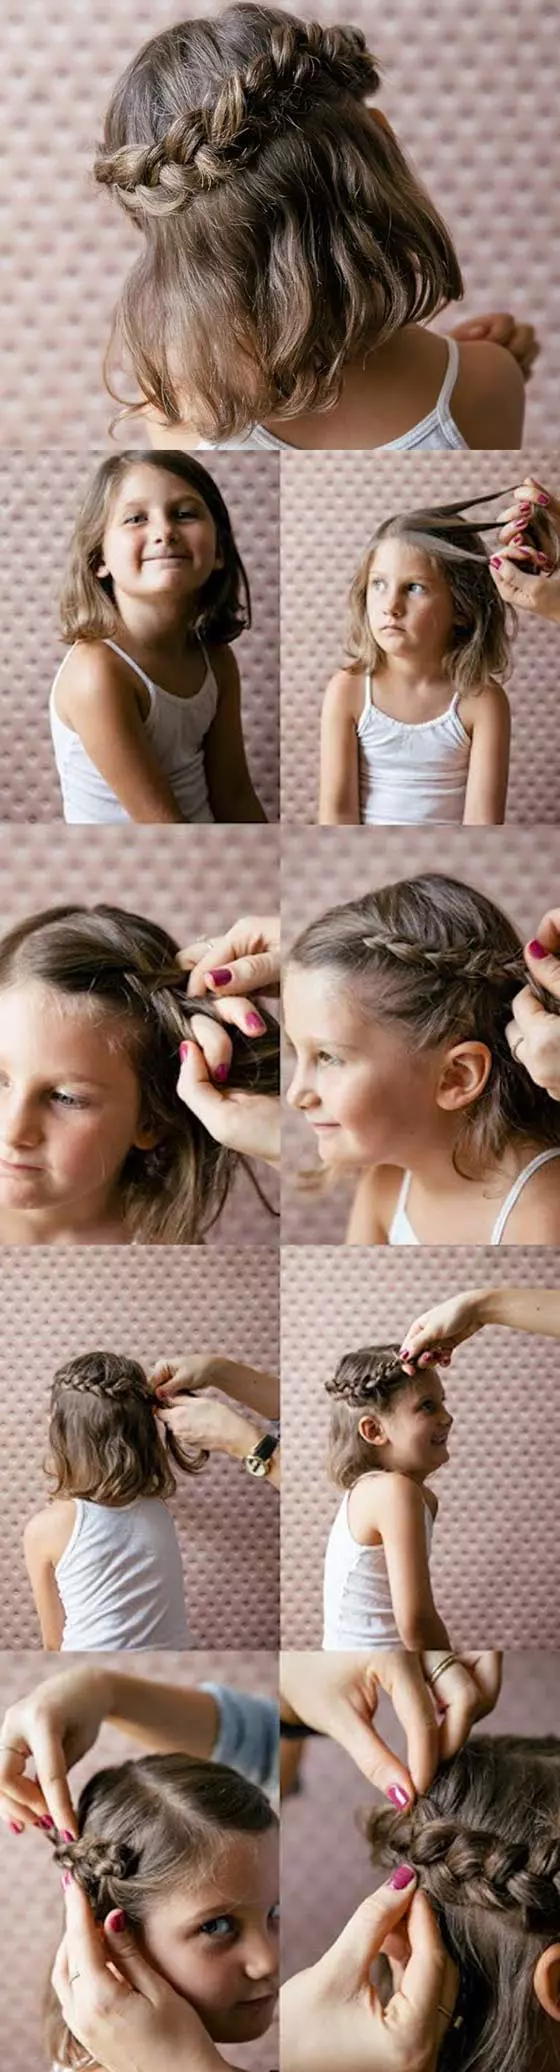 Princess hairstyles tutorial